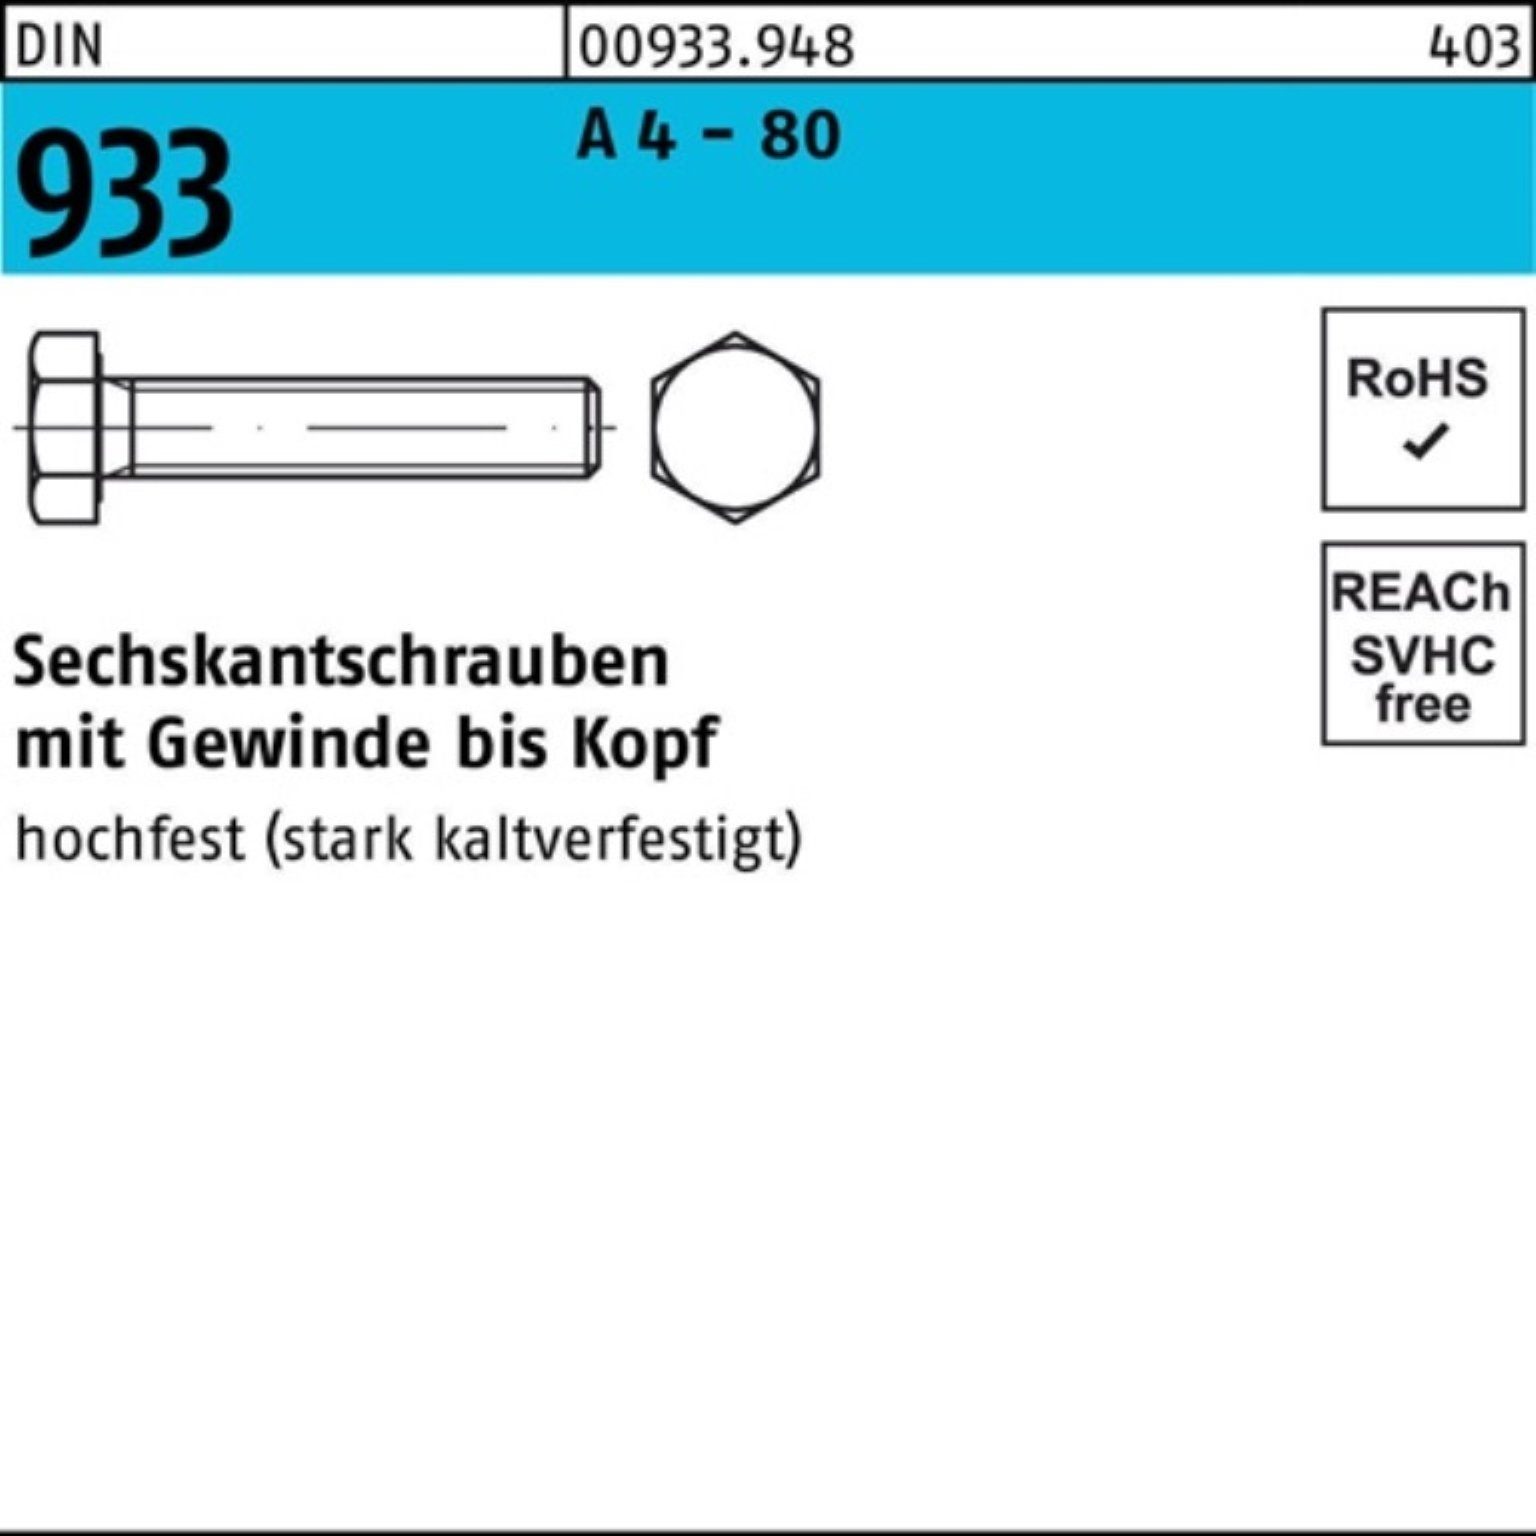 Reyher Sechskantschraube 100er Pack Sechskantschraube DIN 933 VG M10x 60 A 4 - 80 100 Stück DI